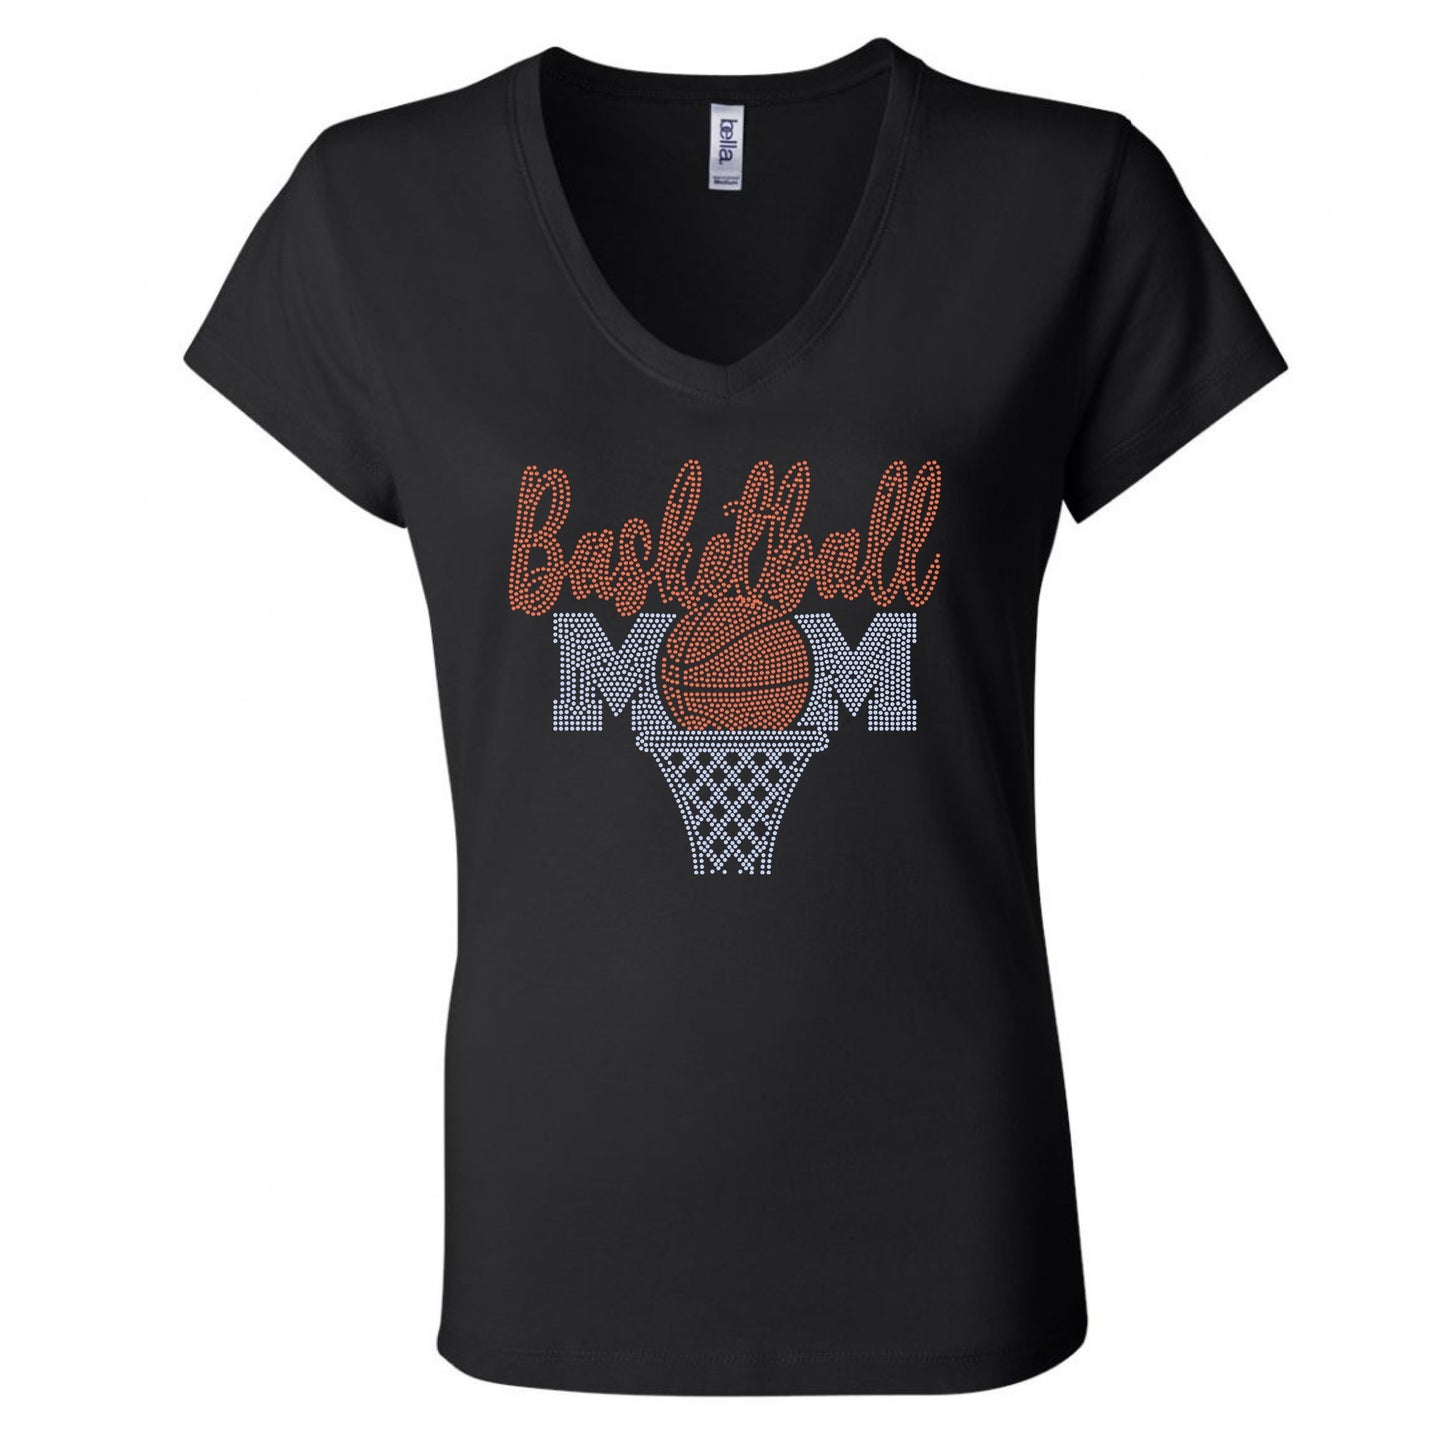 BASKETBALL MOM BLING TRANSFERS